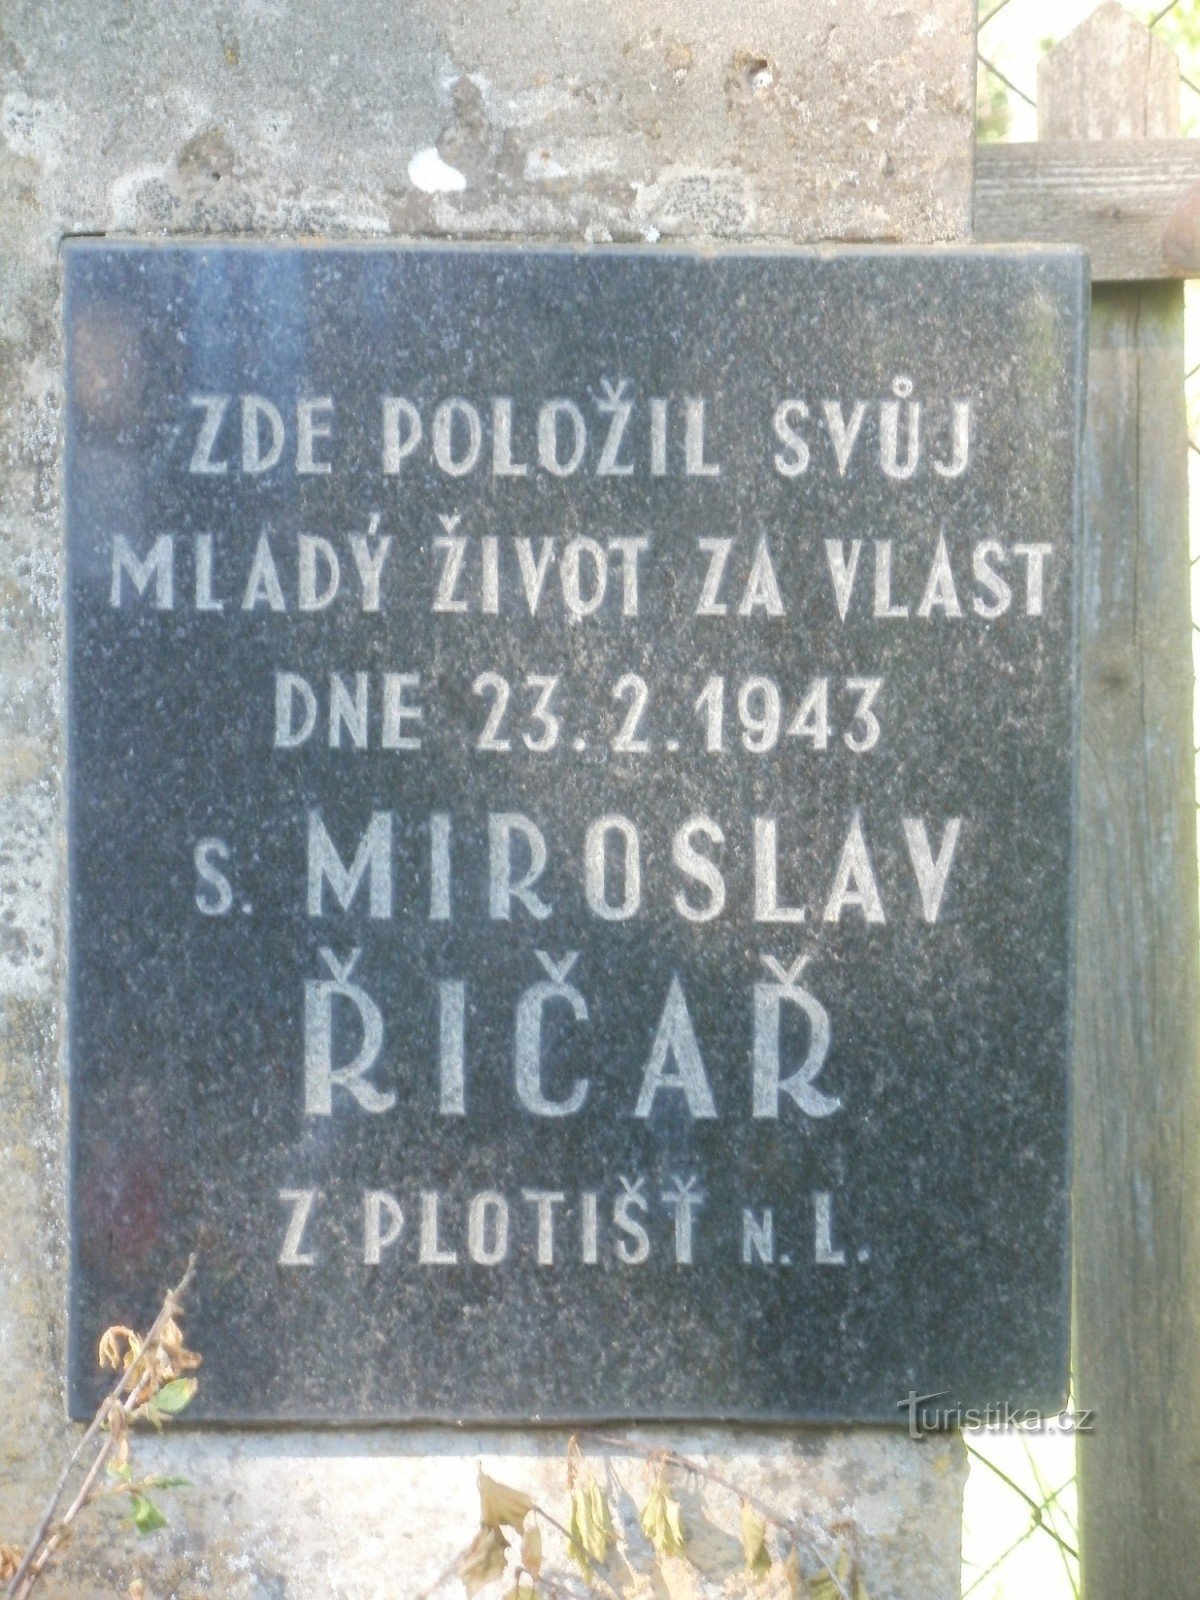 mémorial à M. Říčař près de Týniště nad Orlicí